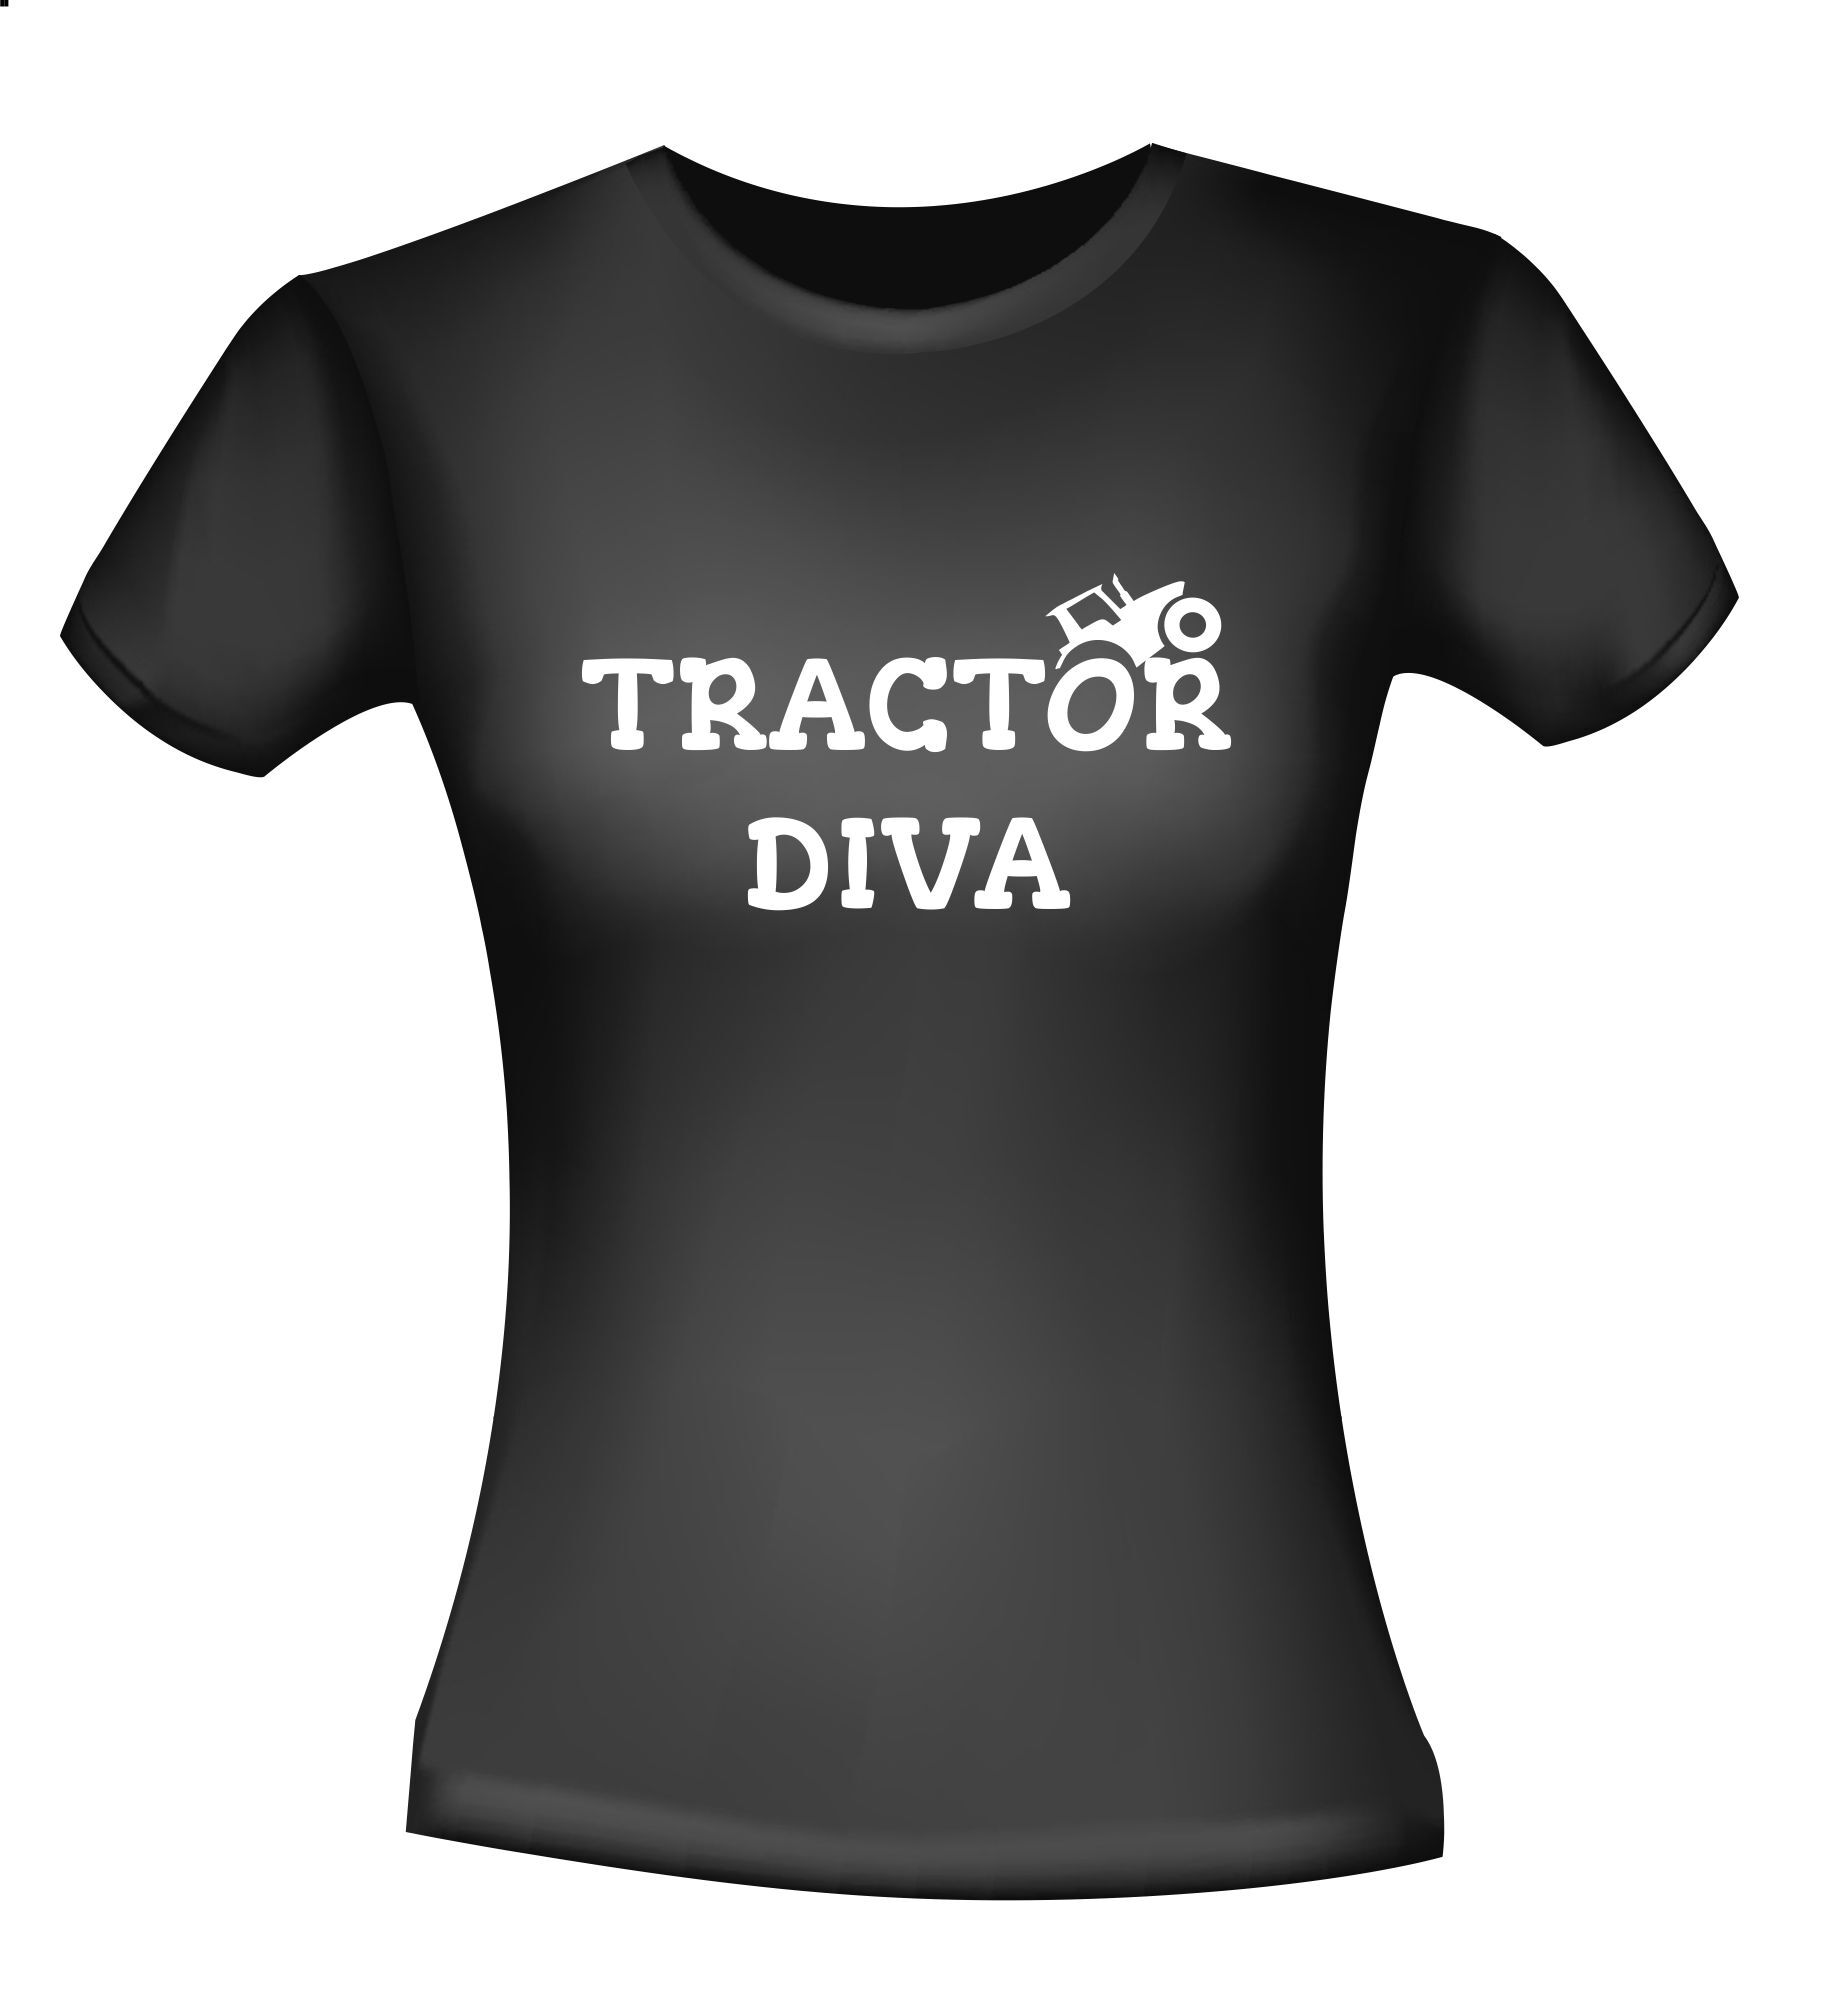 Shirtje voor een boerin een echte tractor diva!